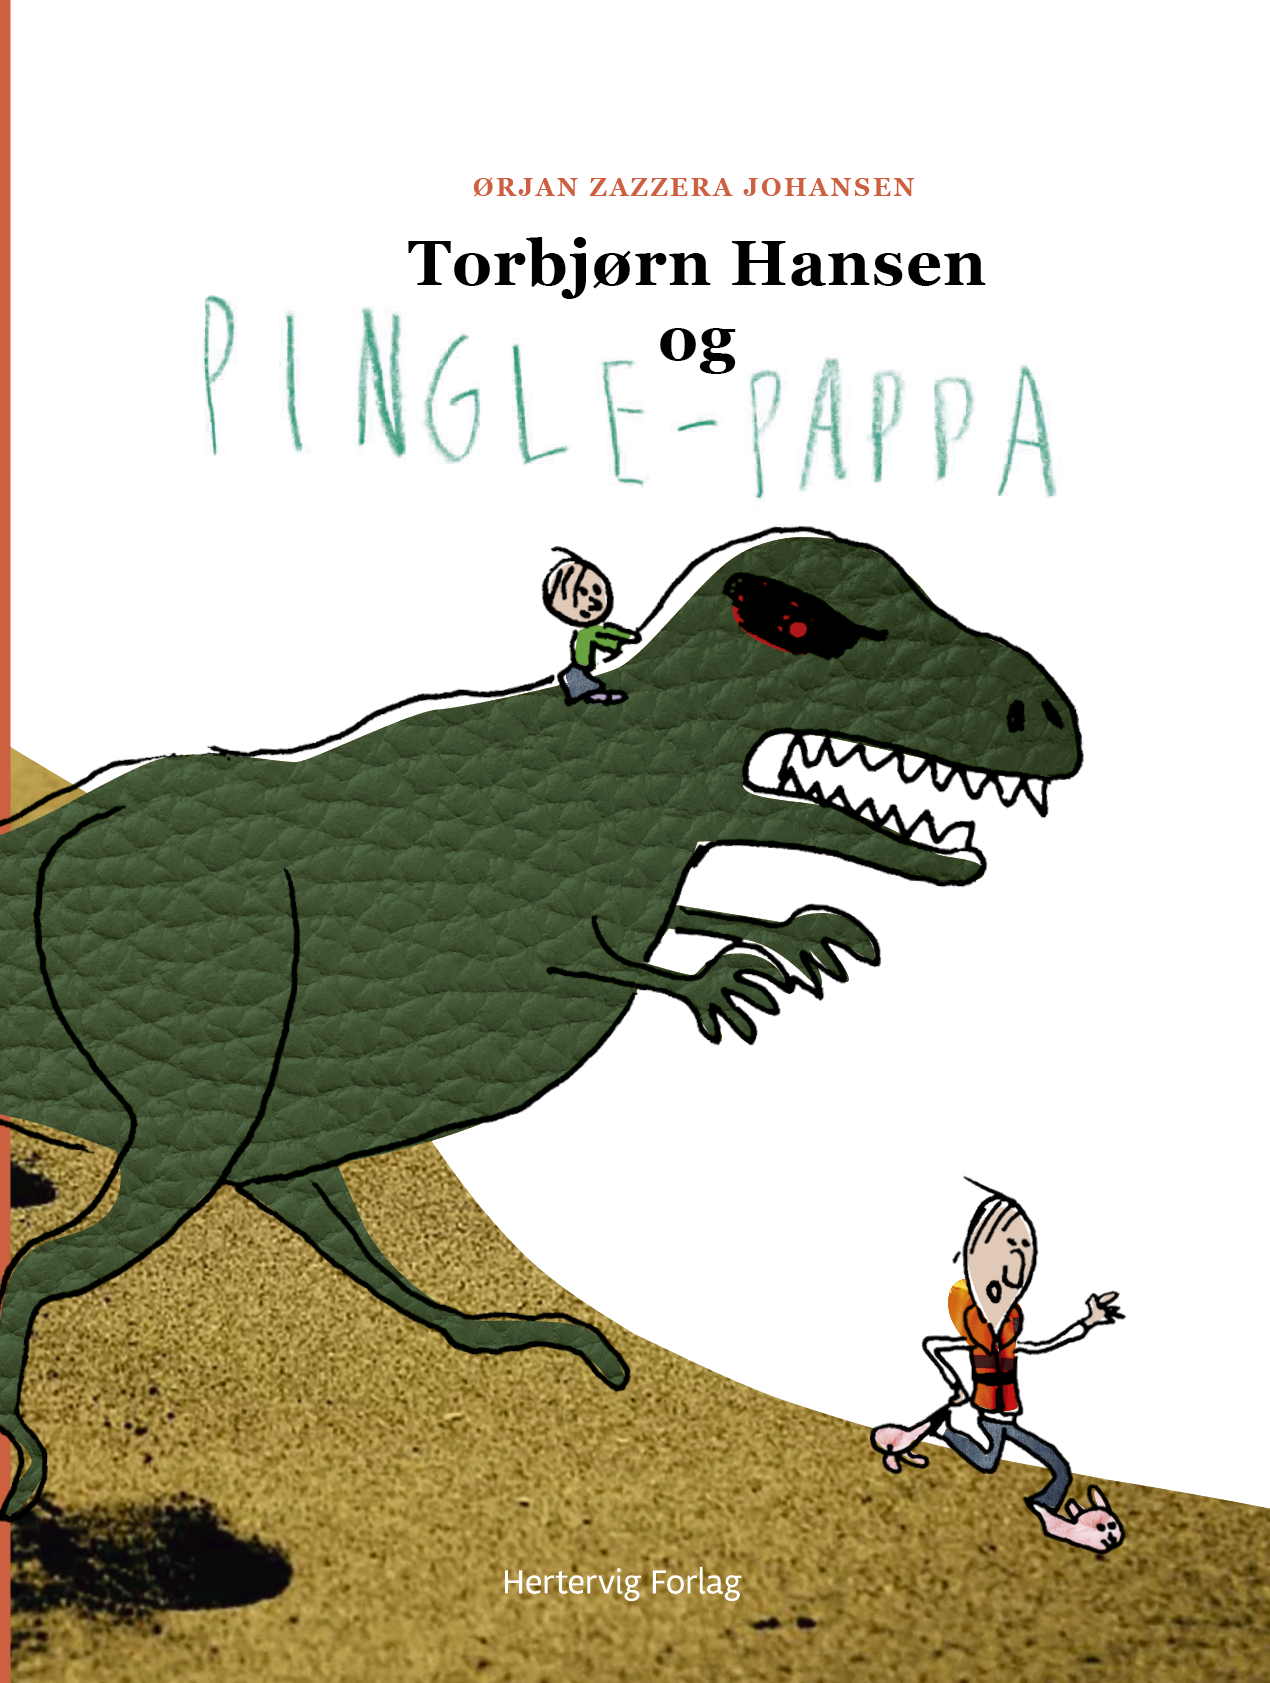 Se Torbjørn Hansen og pingle-pappa